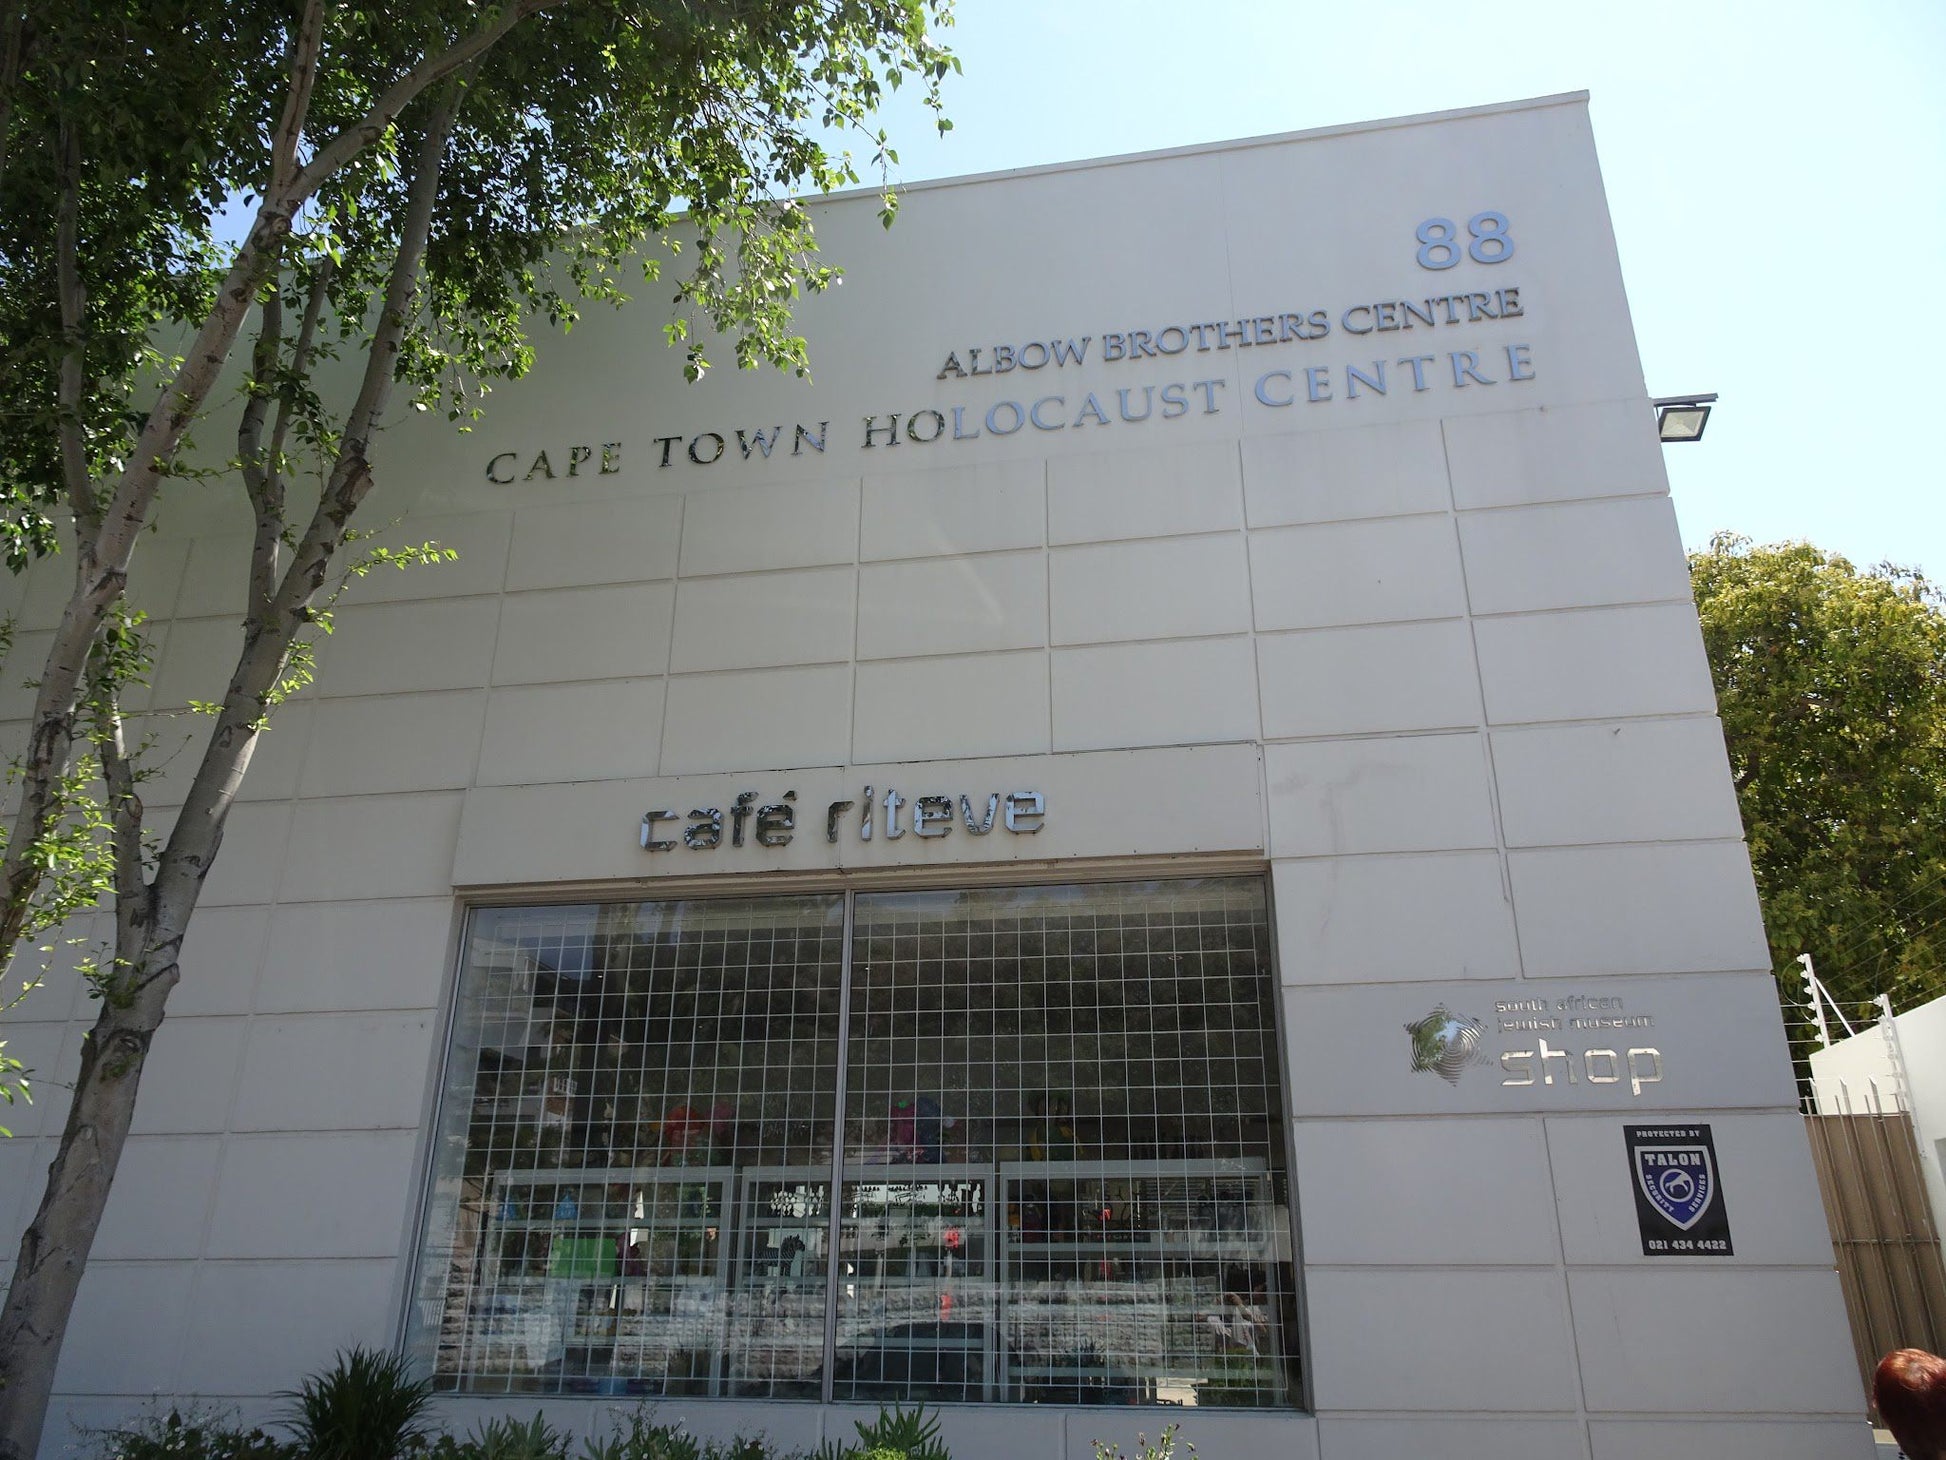  Cape Town Holocaust & Genocide Centre